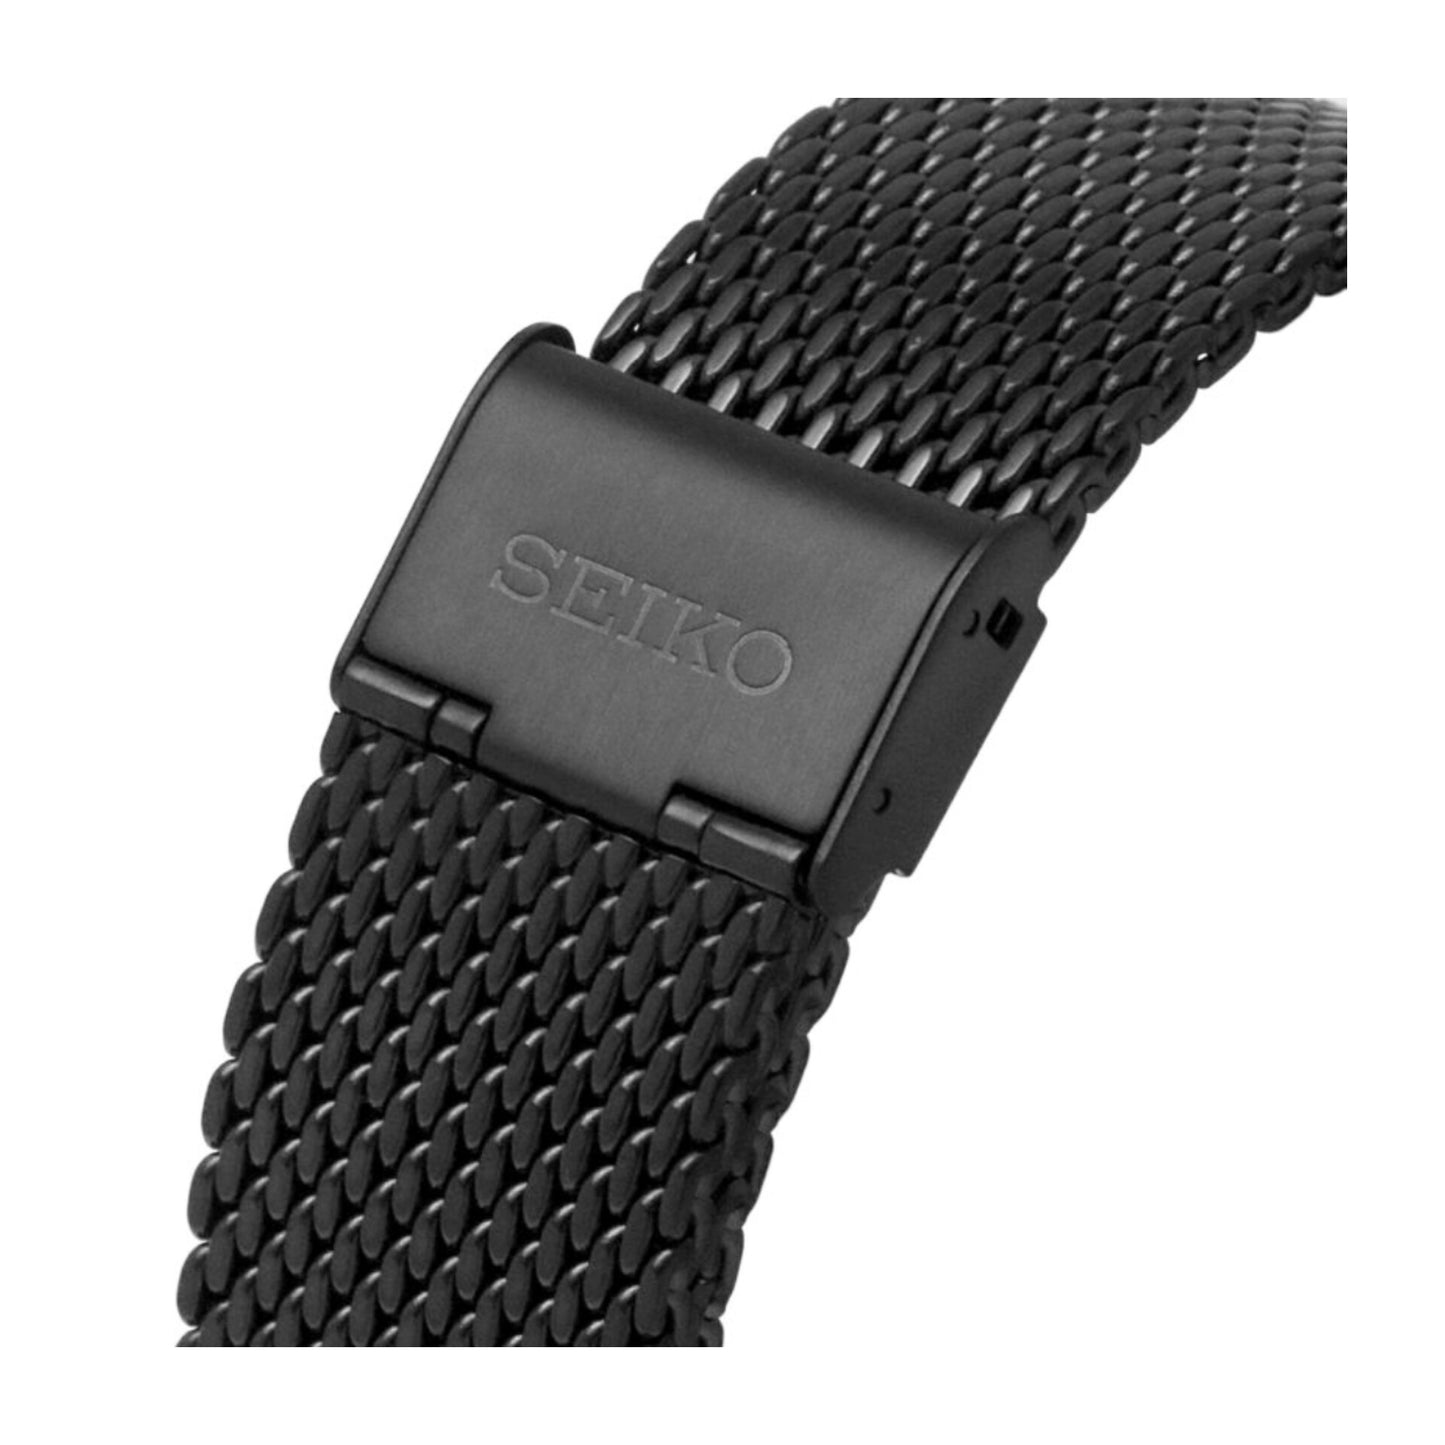 Seiko-5 Sports Mesh Bracelet Black Watch- SRPH25K1